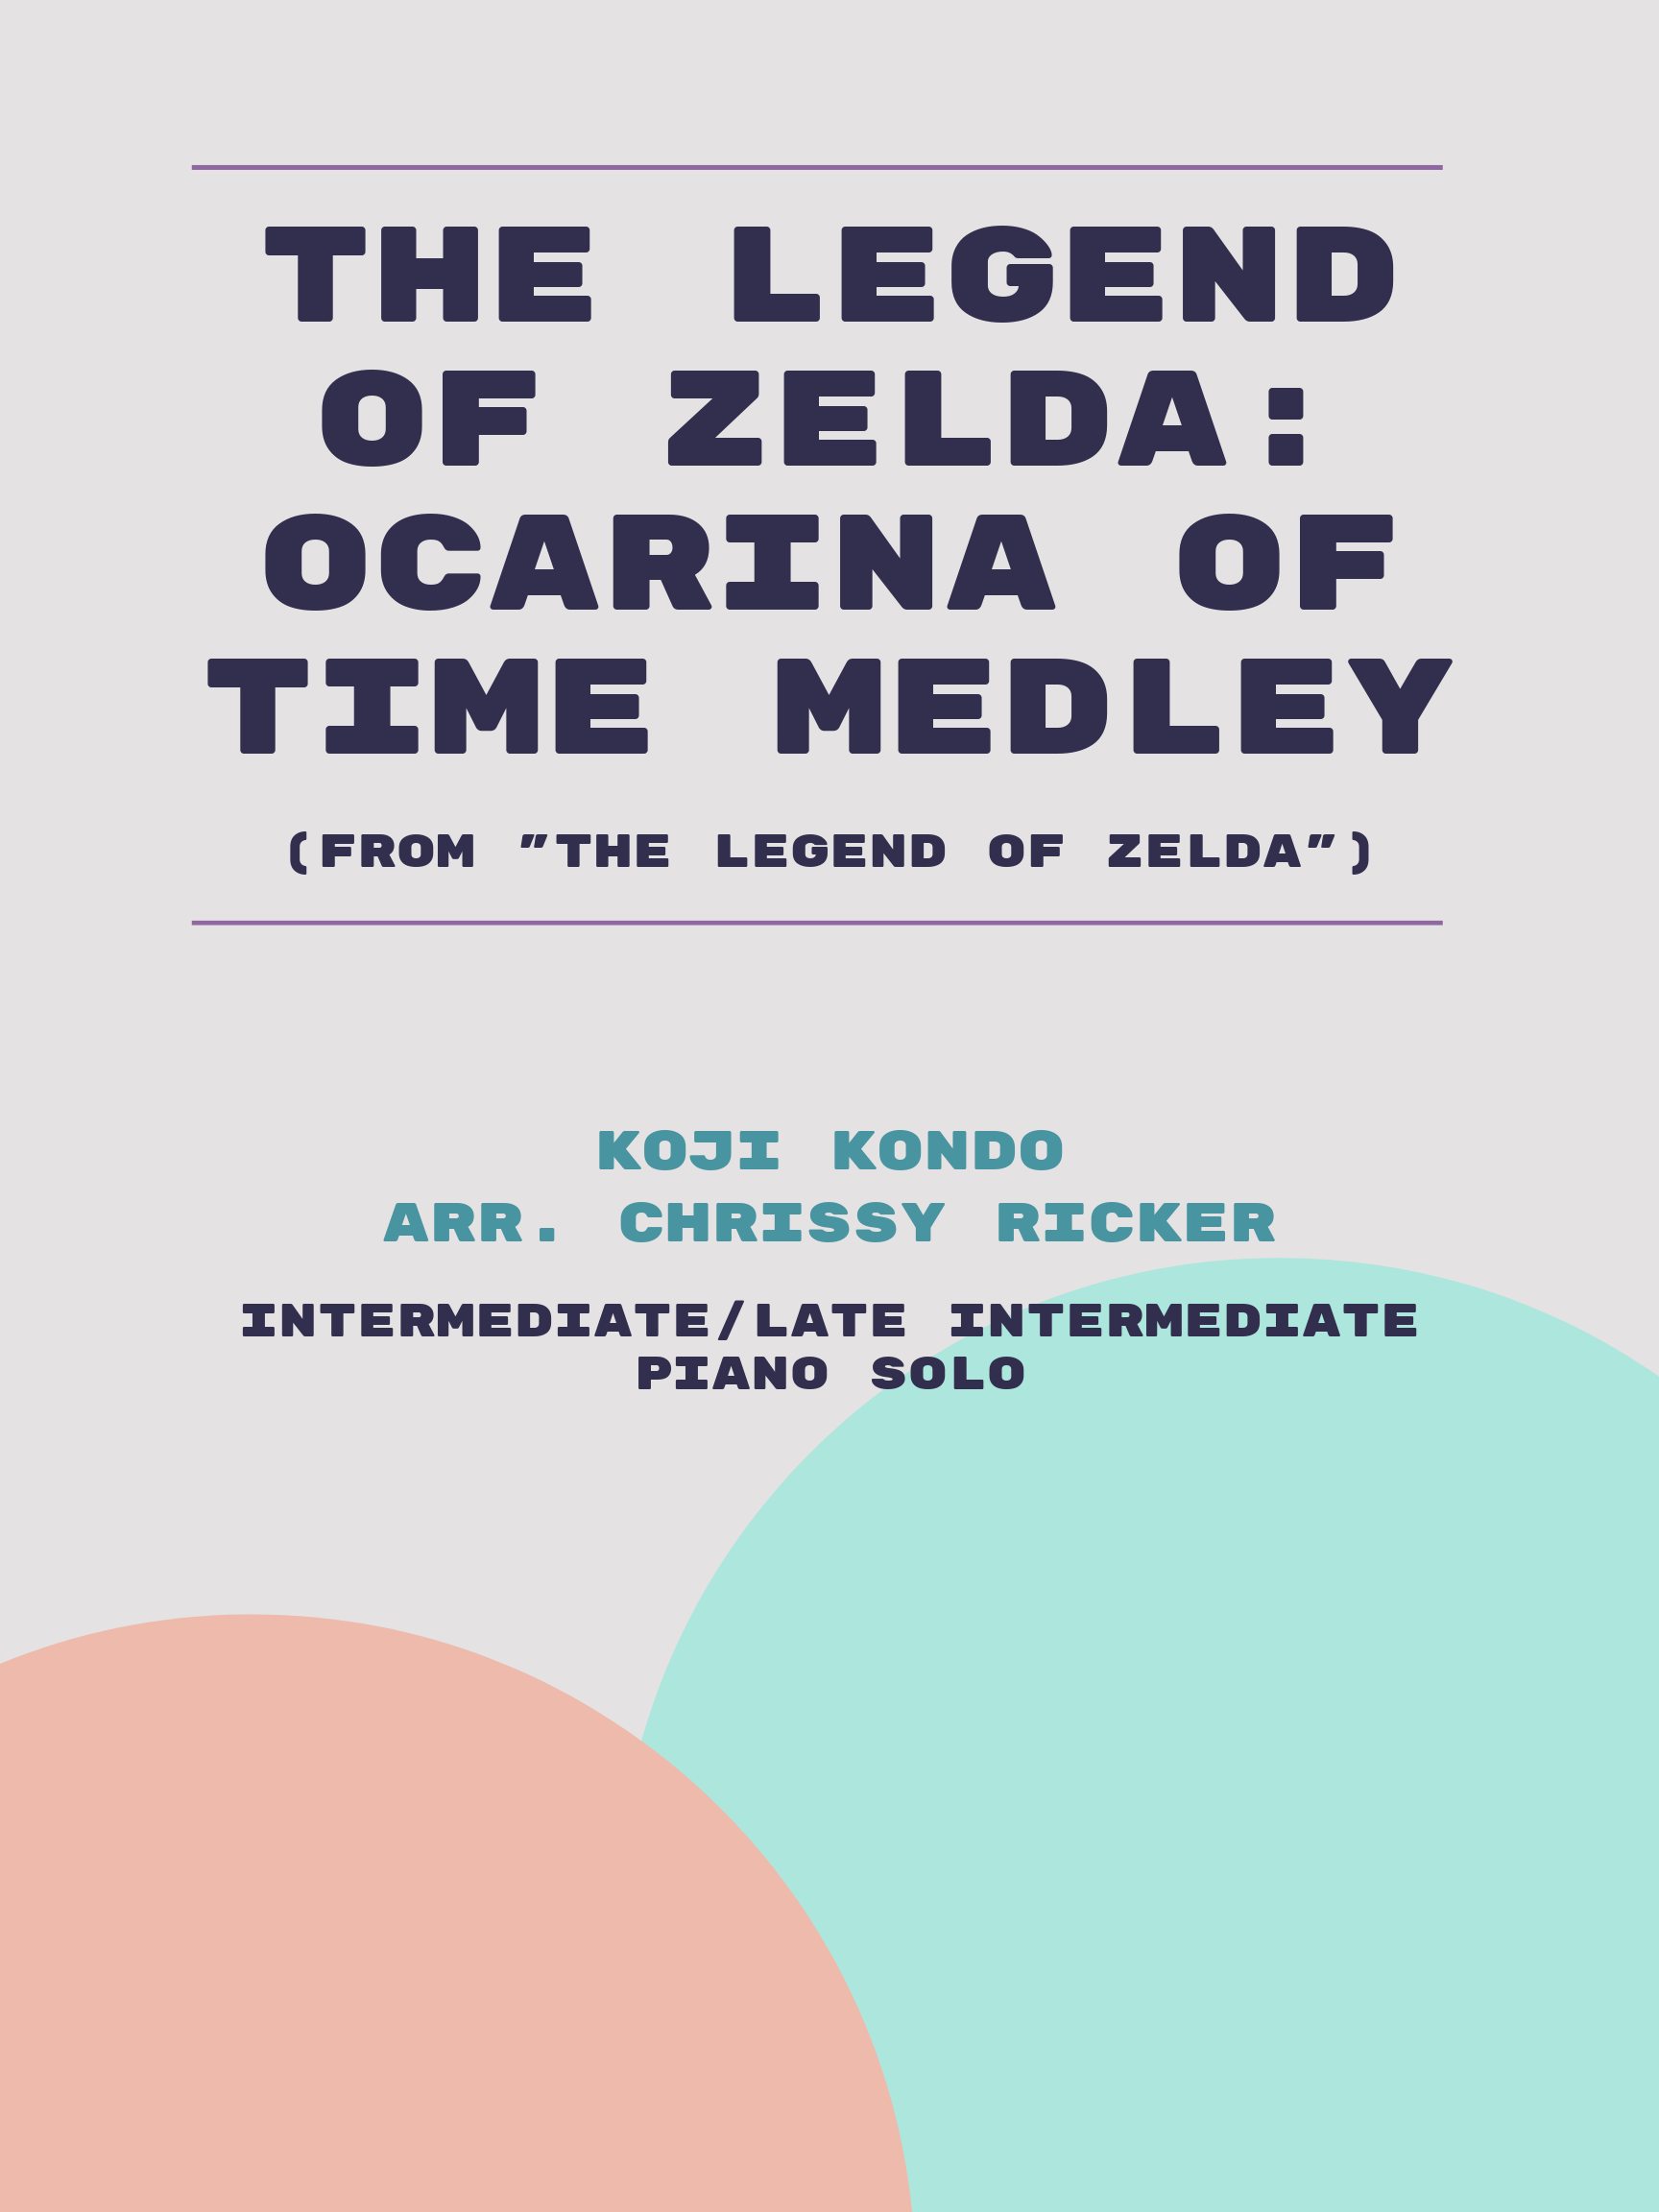 The Legend of Zelda: Ocarina of Time Medley Sample Page